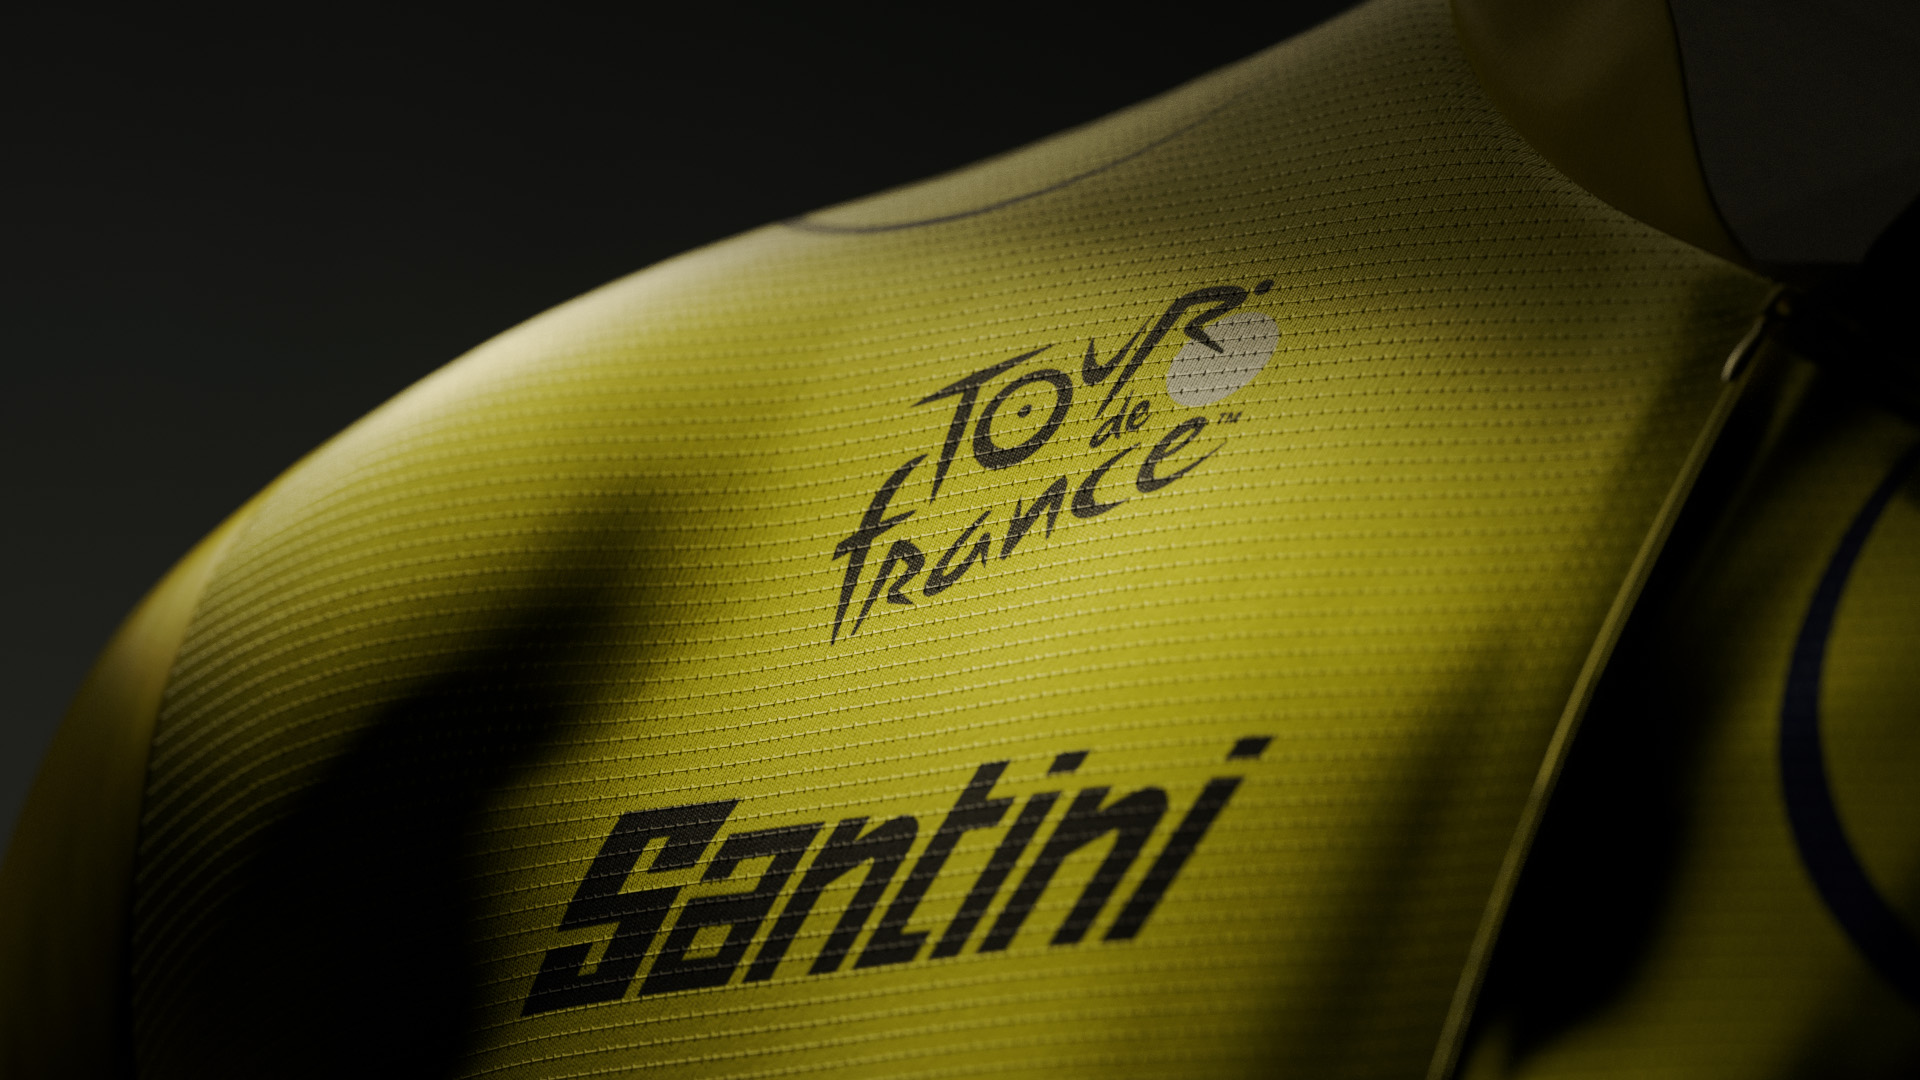 Santini fabricará el maillot amarillo del Tour de Francia a partir de 2022